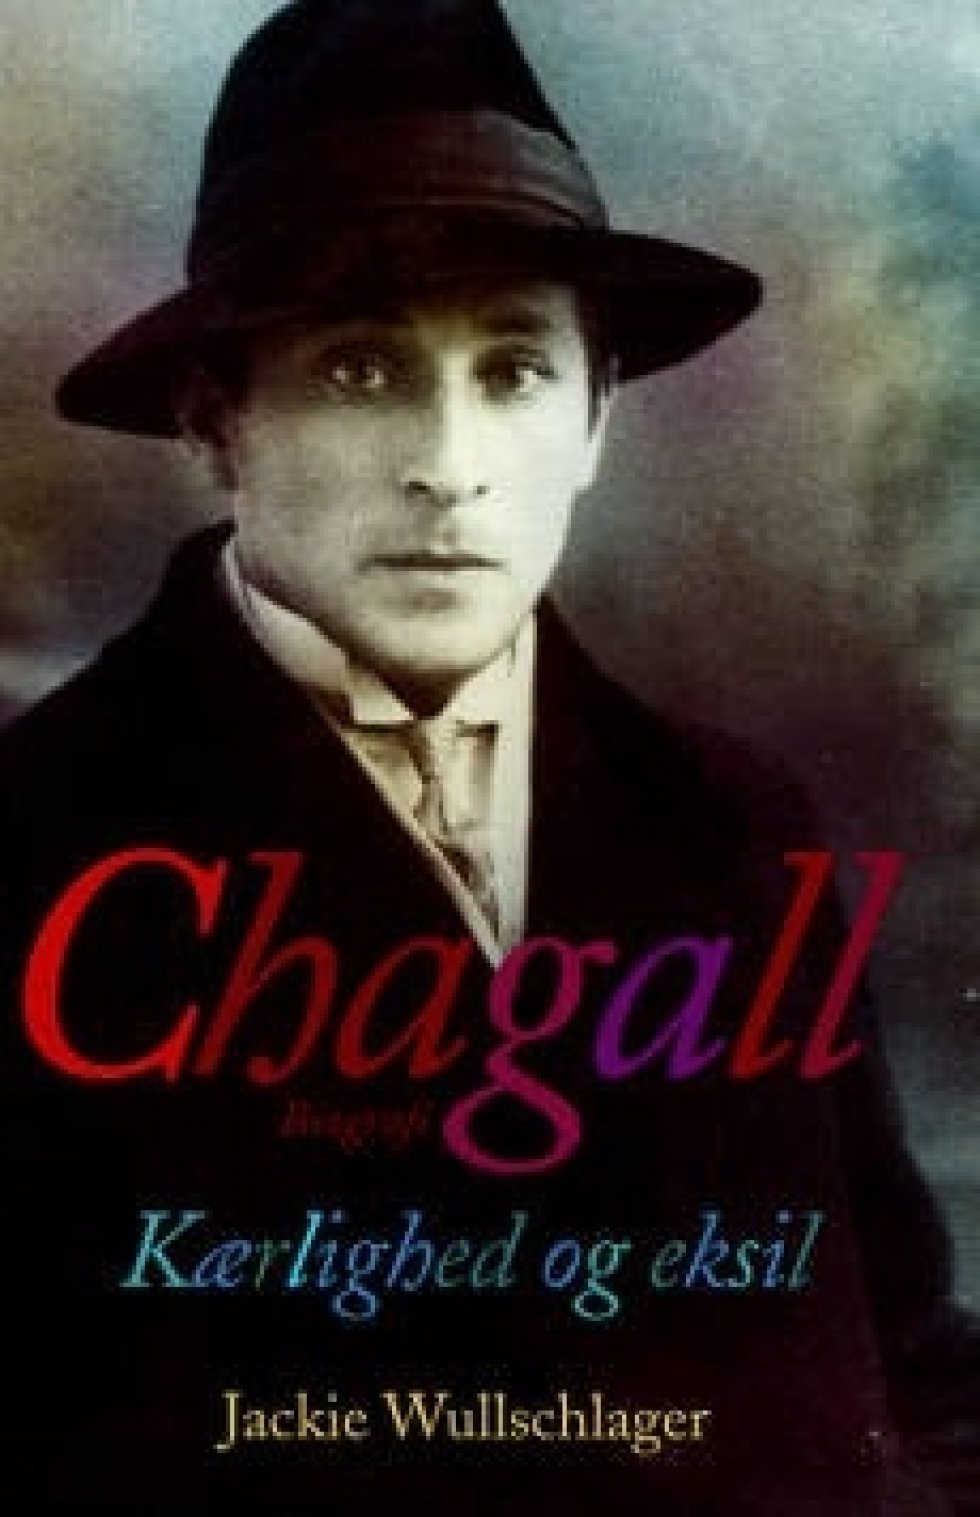 Chagall - Kærlighed og eksil